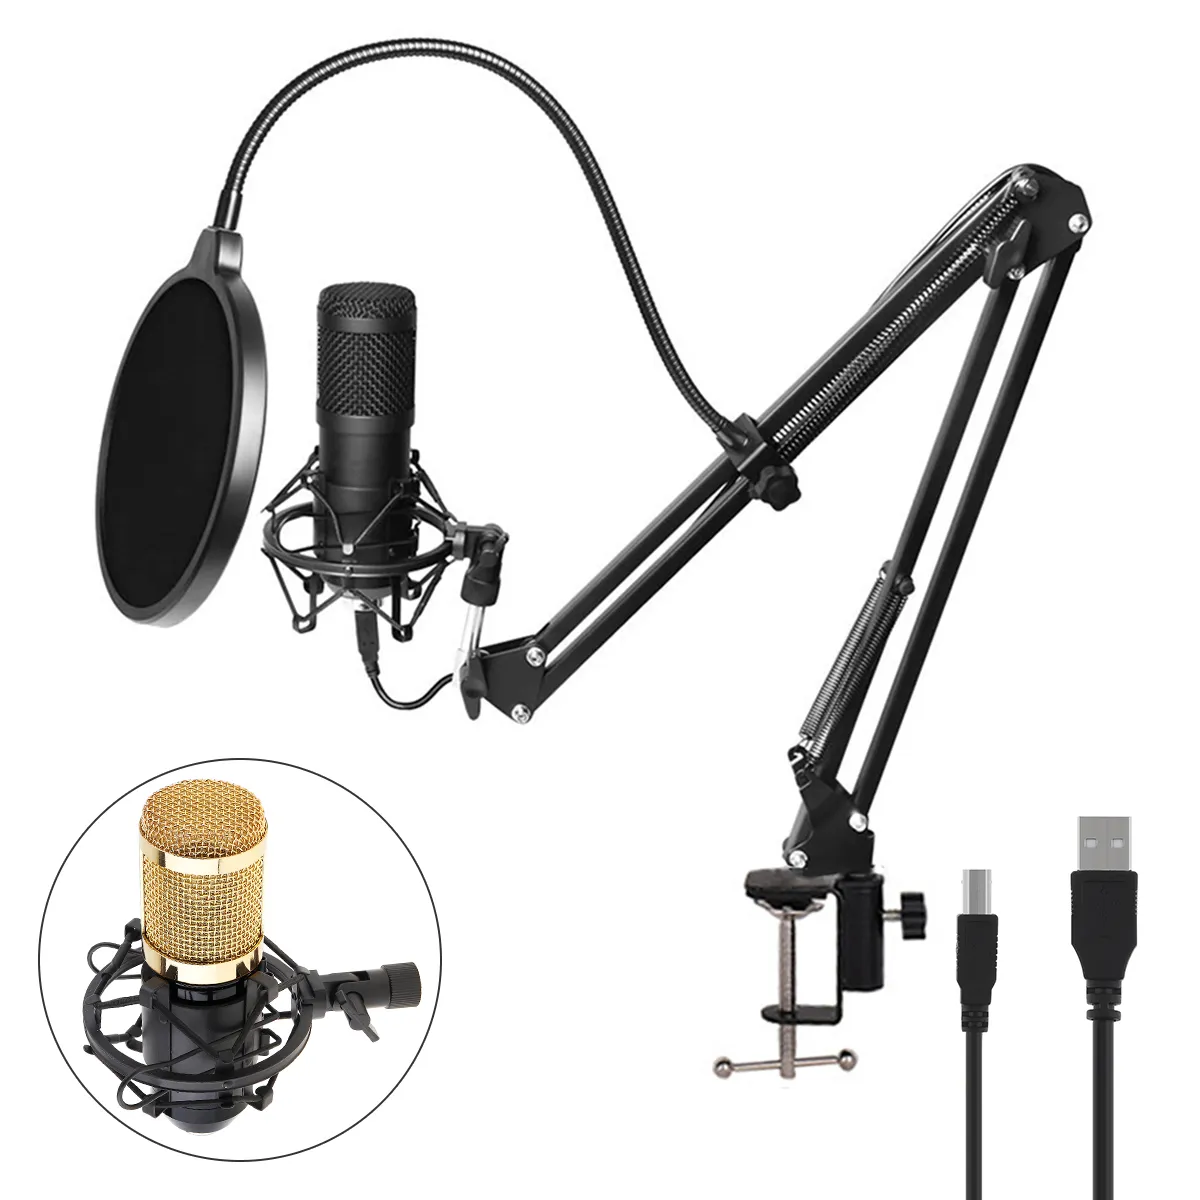 BM-800 USB Mikrofon kondensator 192 kHz / 24-bitowe zestawy mikrofonowe do mikrofonu karaoke do nagrywania dźwięku / studia